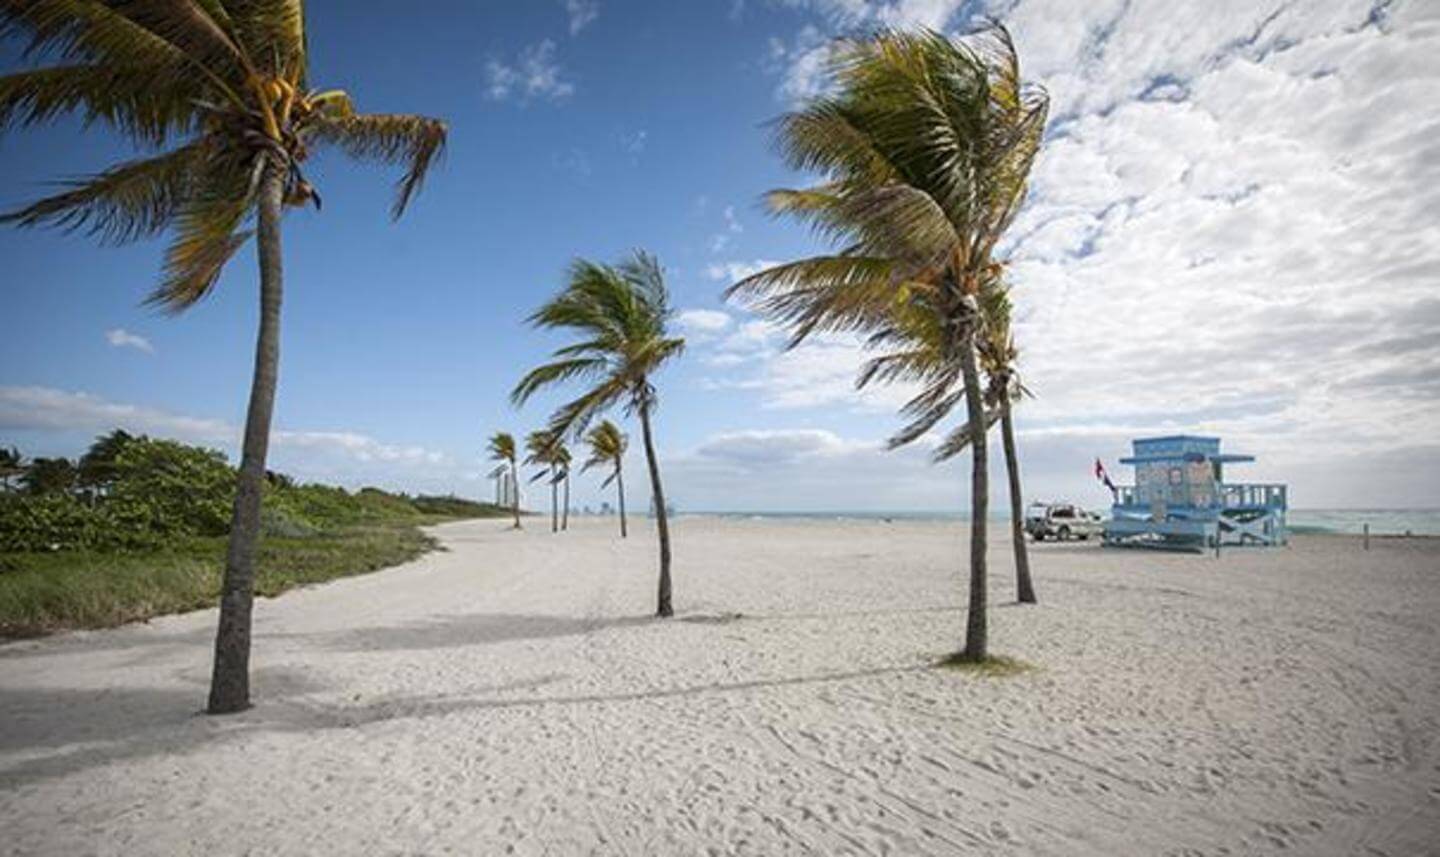 Miami's Haulover nude beach